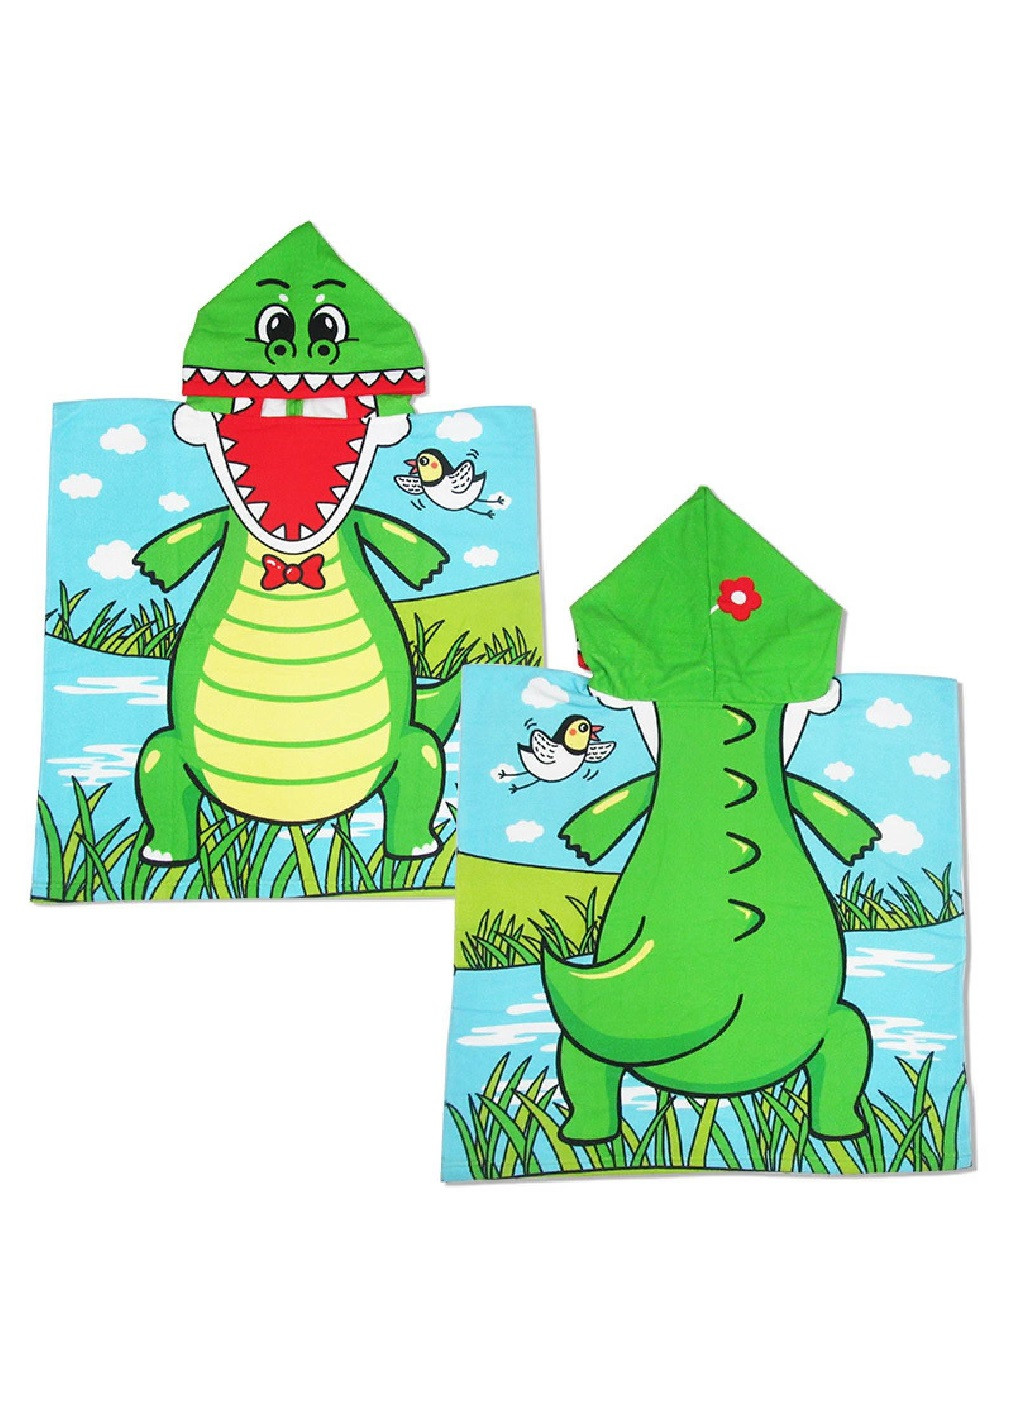 Unbranded дитячий рушник пончо з капюшоном мікрофібра для ванної басейну пляжу 60х60 см (474685-prob) динозавр малюнок зелений виробництво -